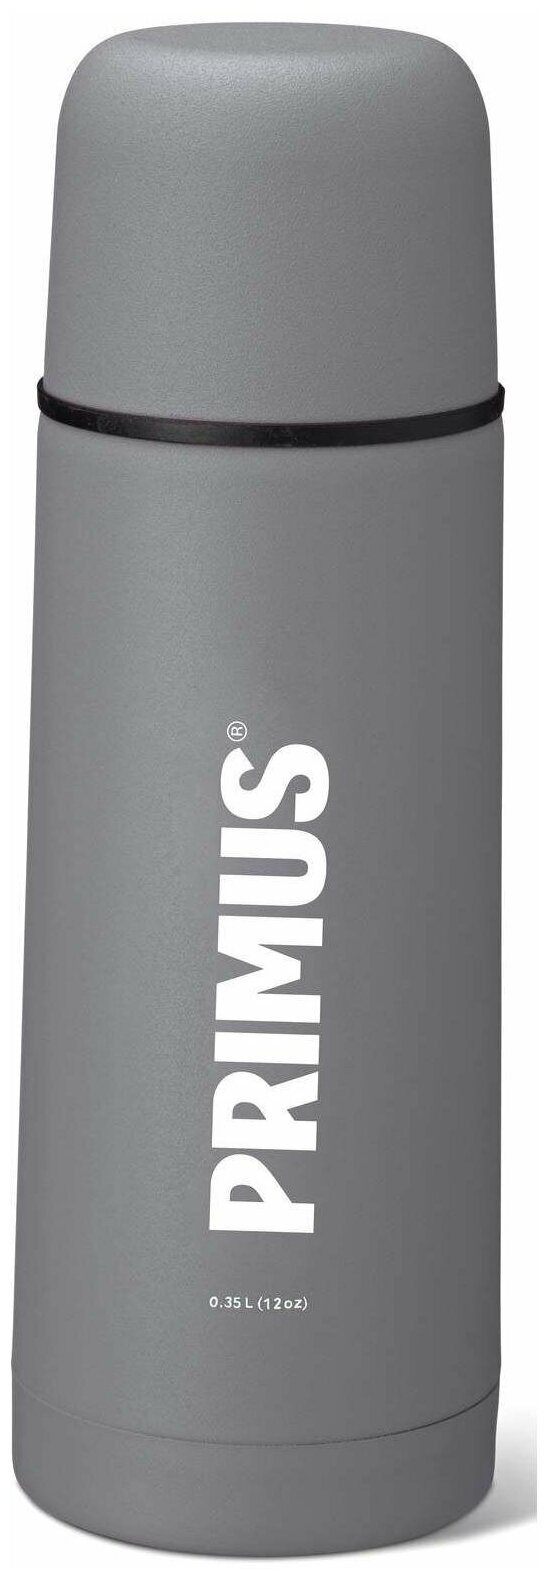 Термос Primus Vacuum bottle 0.35 Concrete Gray